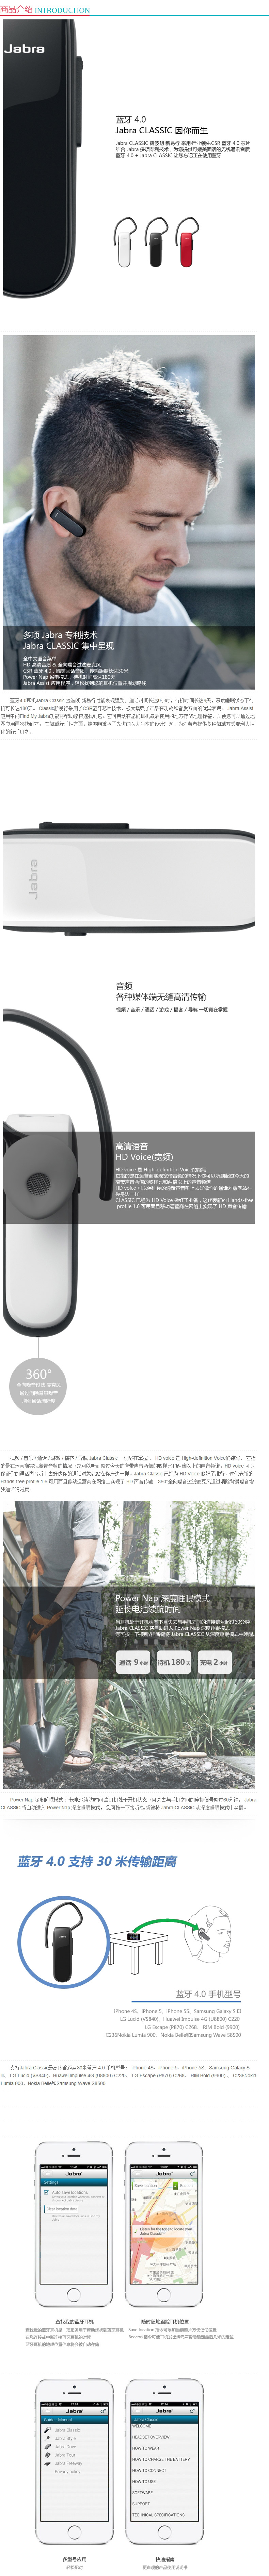 捷波朗 Jabra 蓝牙耳机 CLASSIC (白色) 新易行